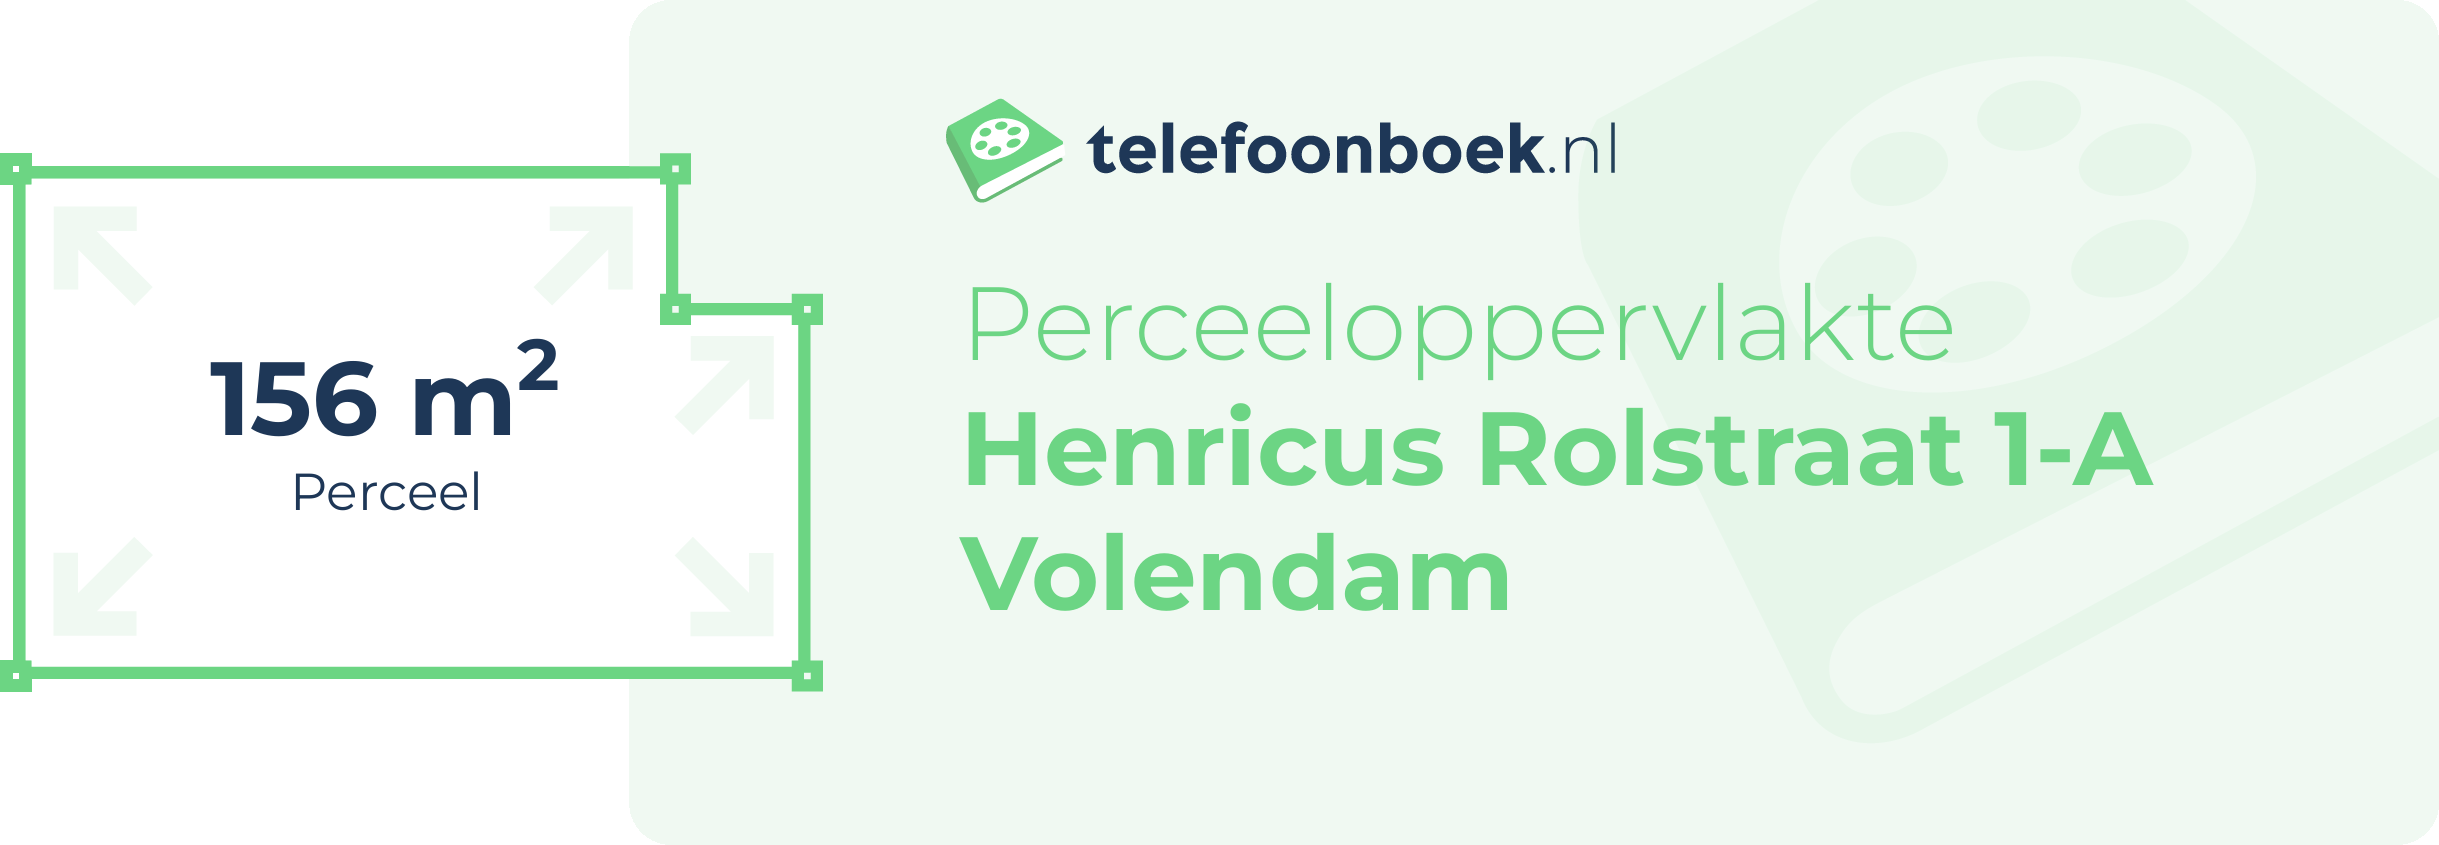 Perceeloppervlakte Henricus Rolstraat 1-A Volendam